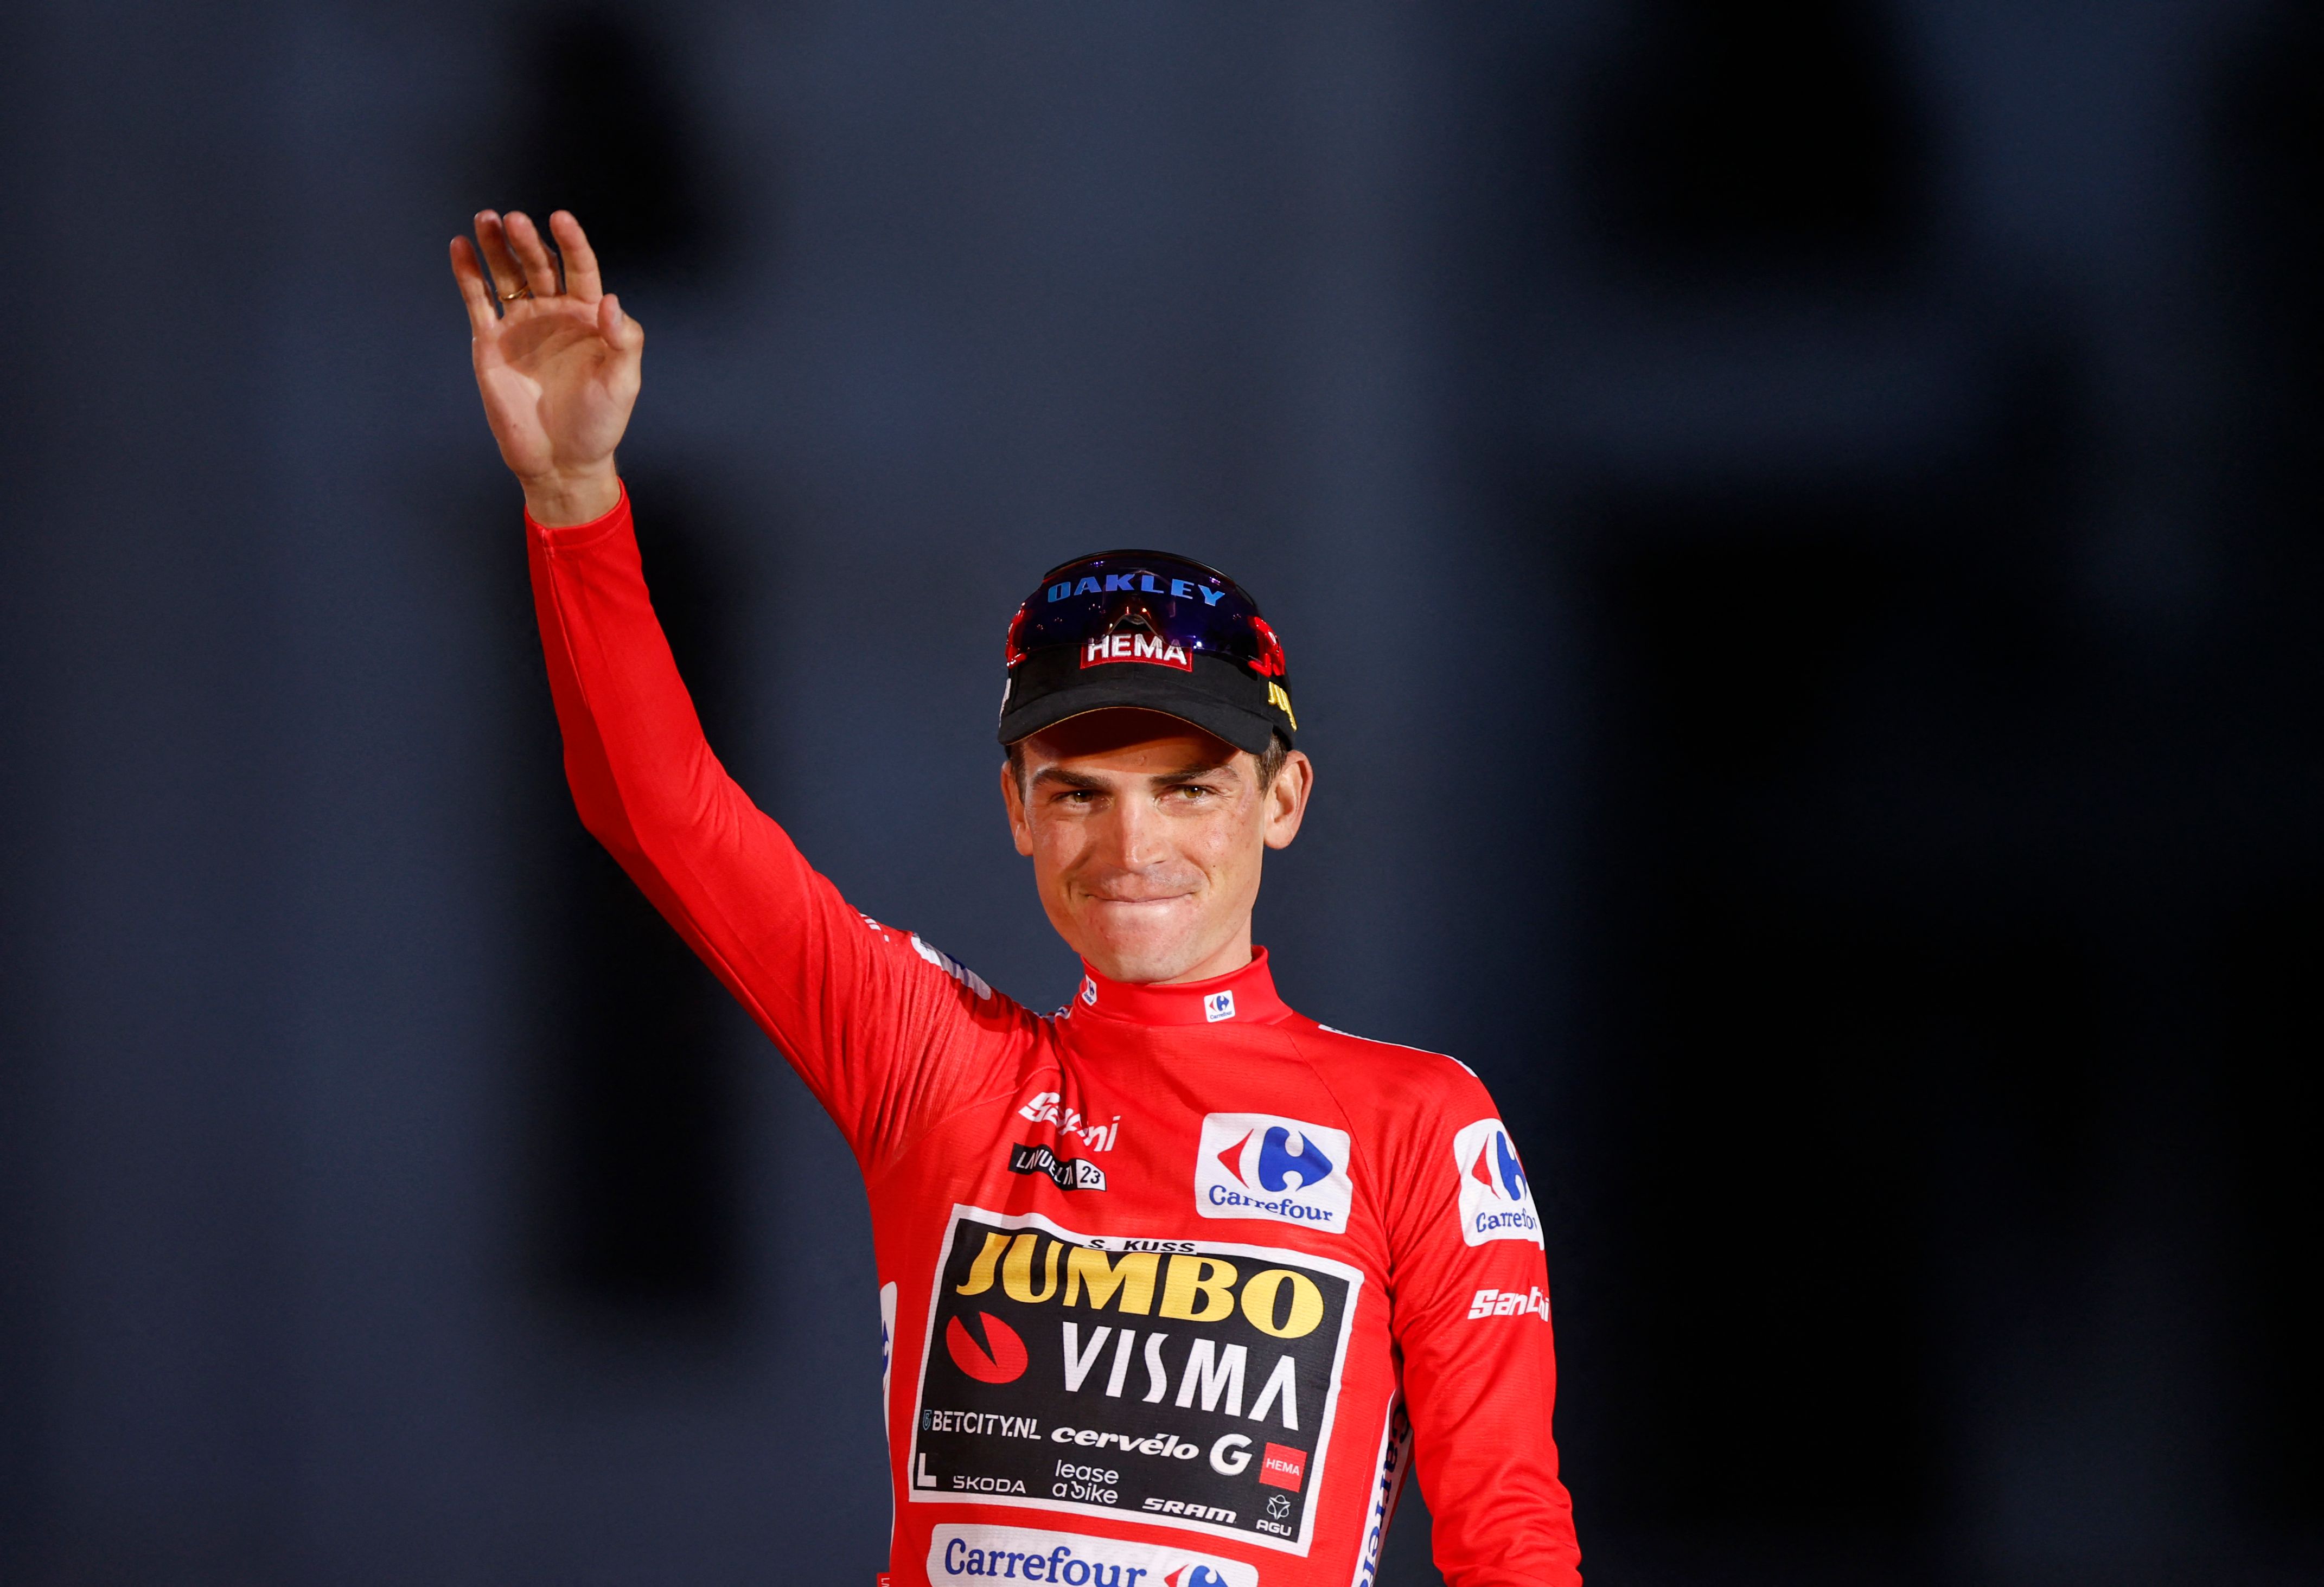 Sepp Kuss wins the 2023 Vuelta a Espana